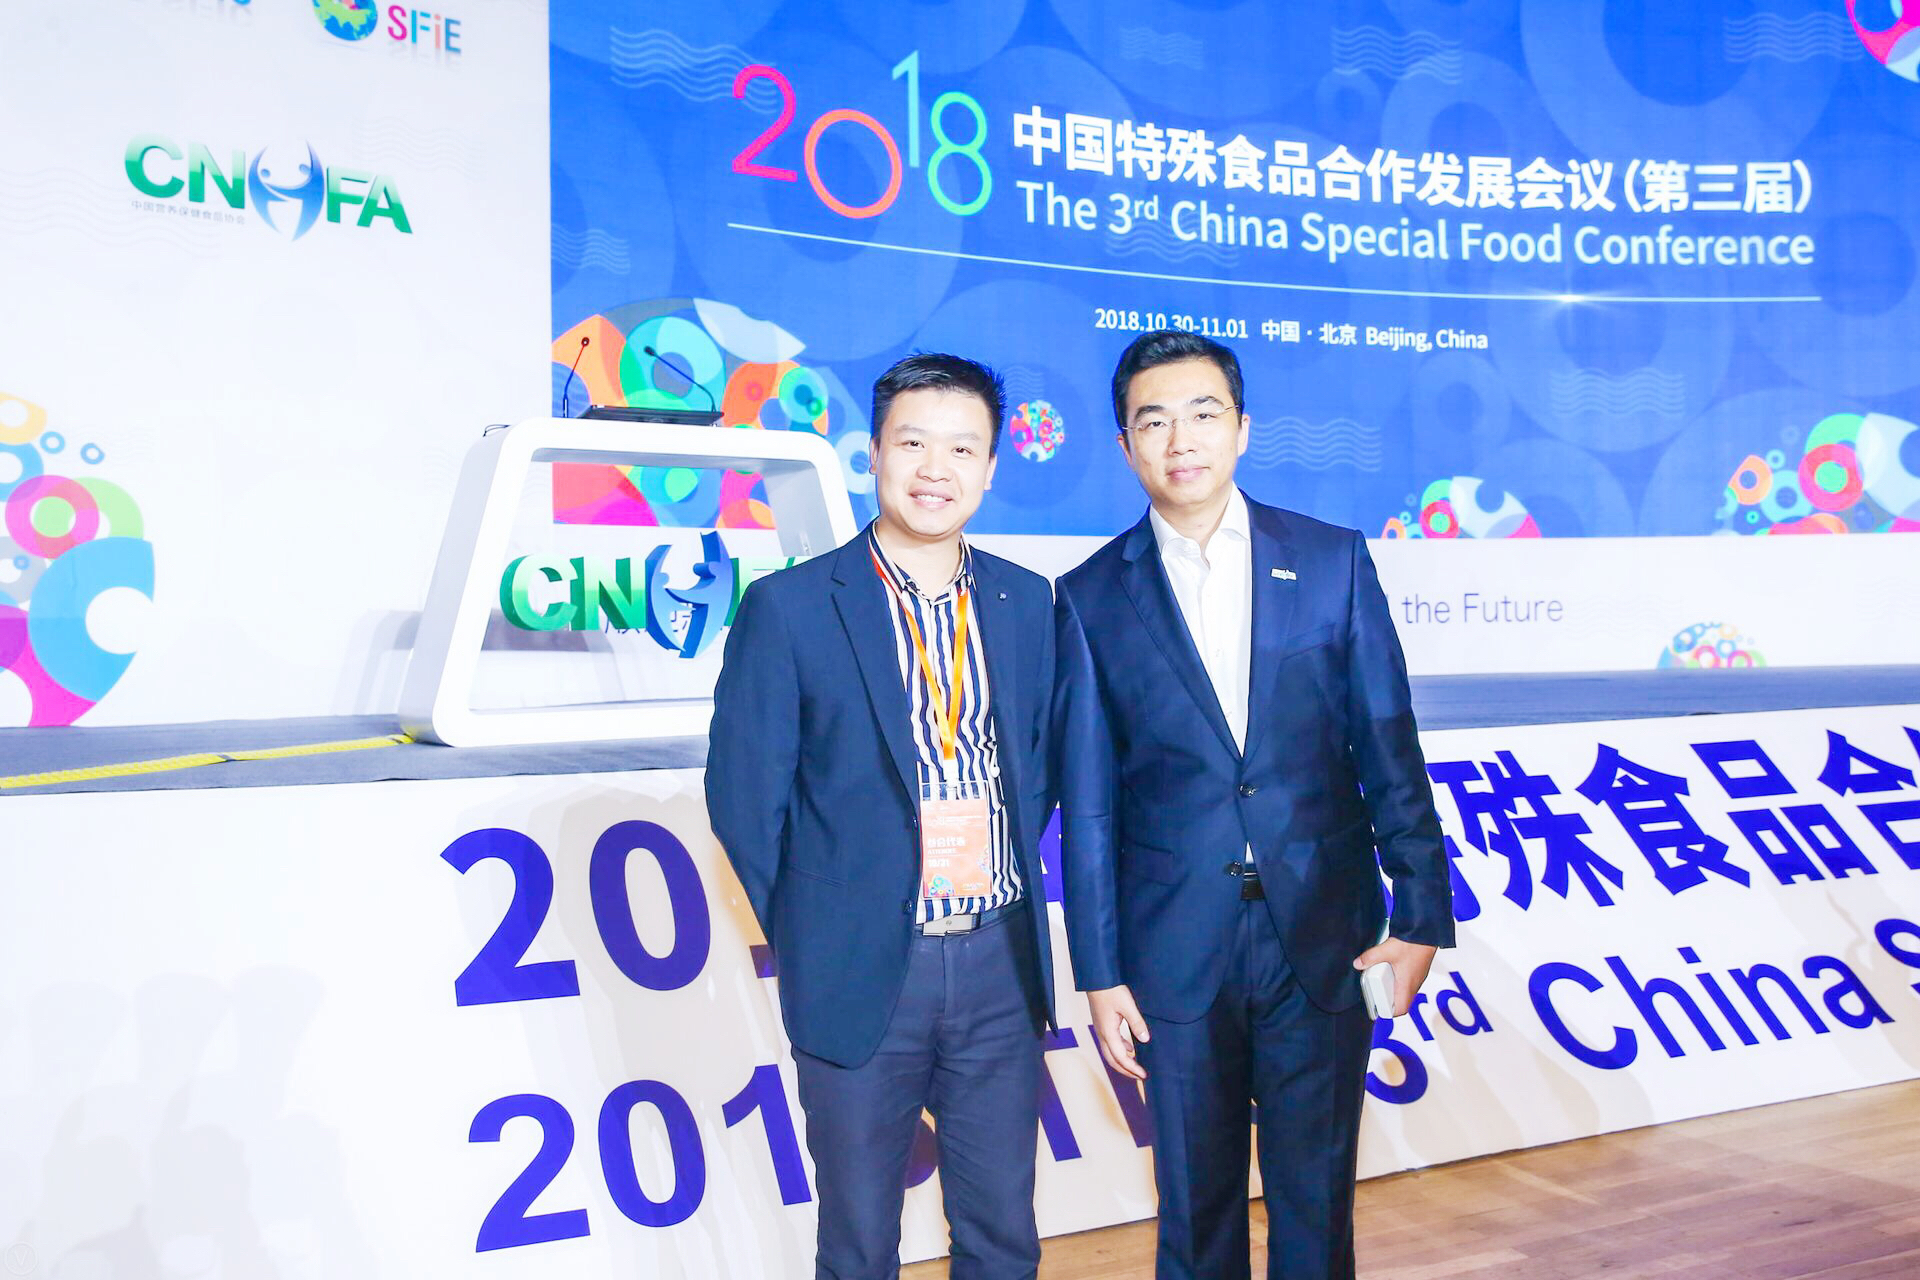 和天然 | 张总受邀参加2018中国特殊食品合作发展会议暨特殊食品展览会